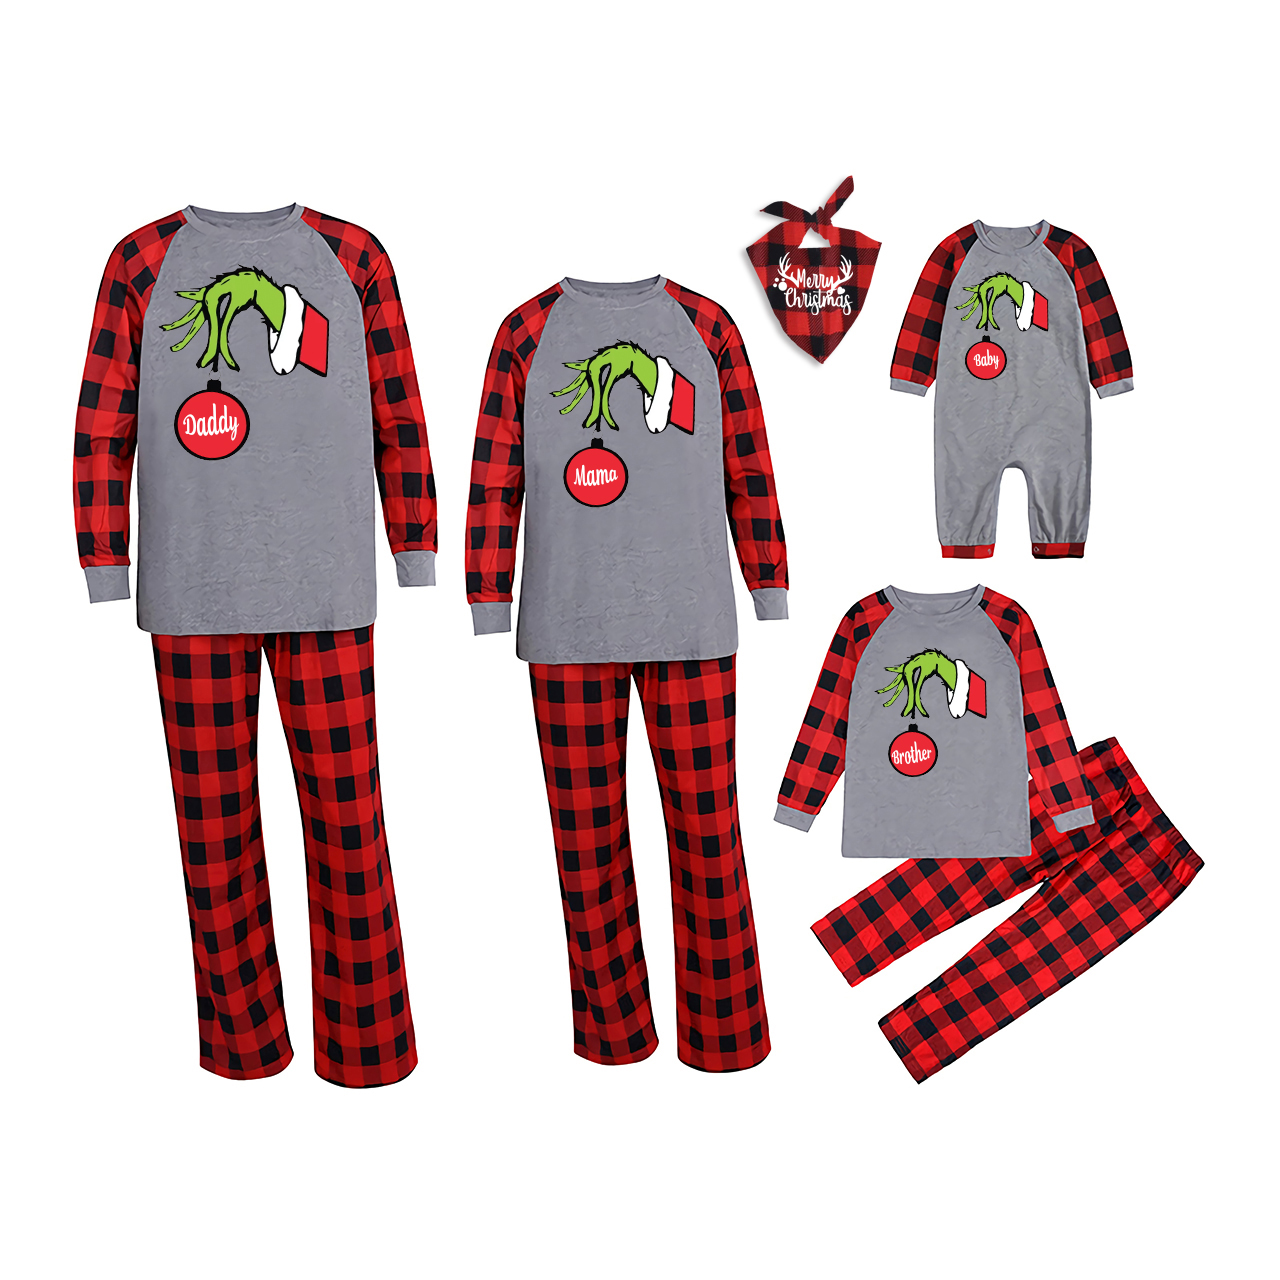 Red Bulb Christmas Family Matching Pajamas